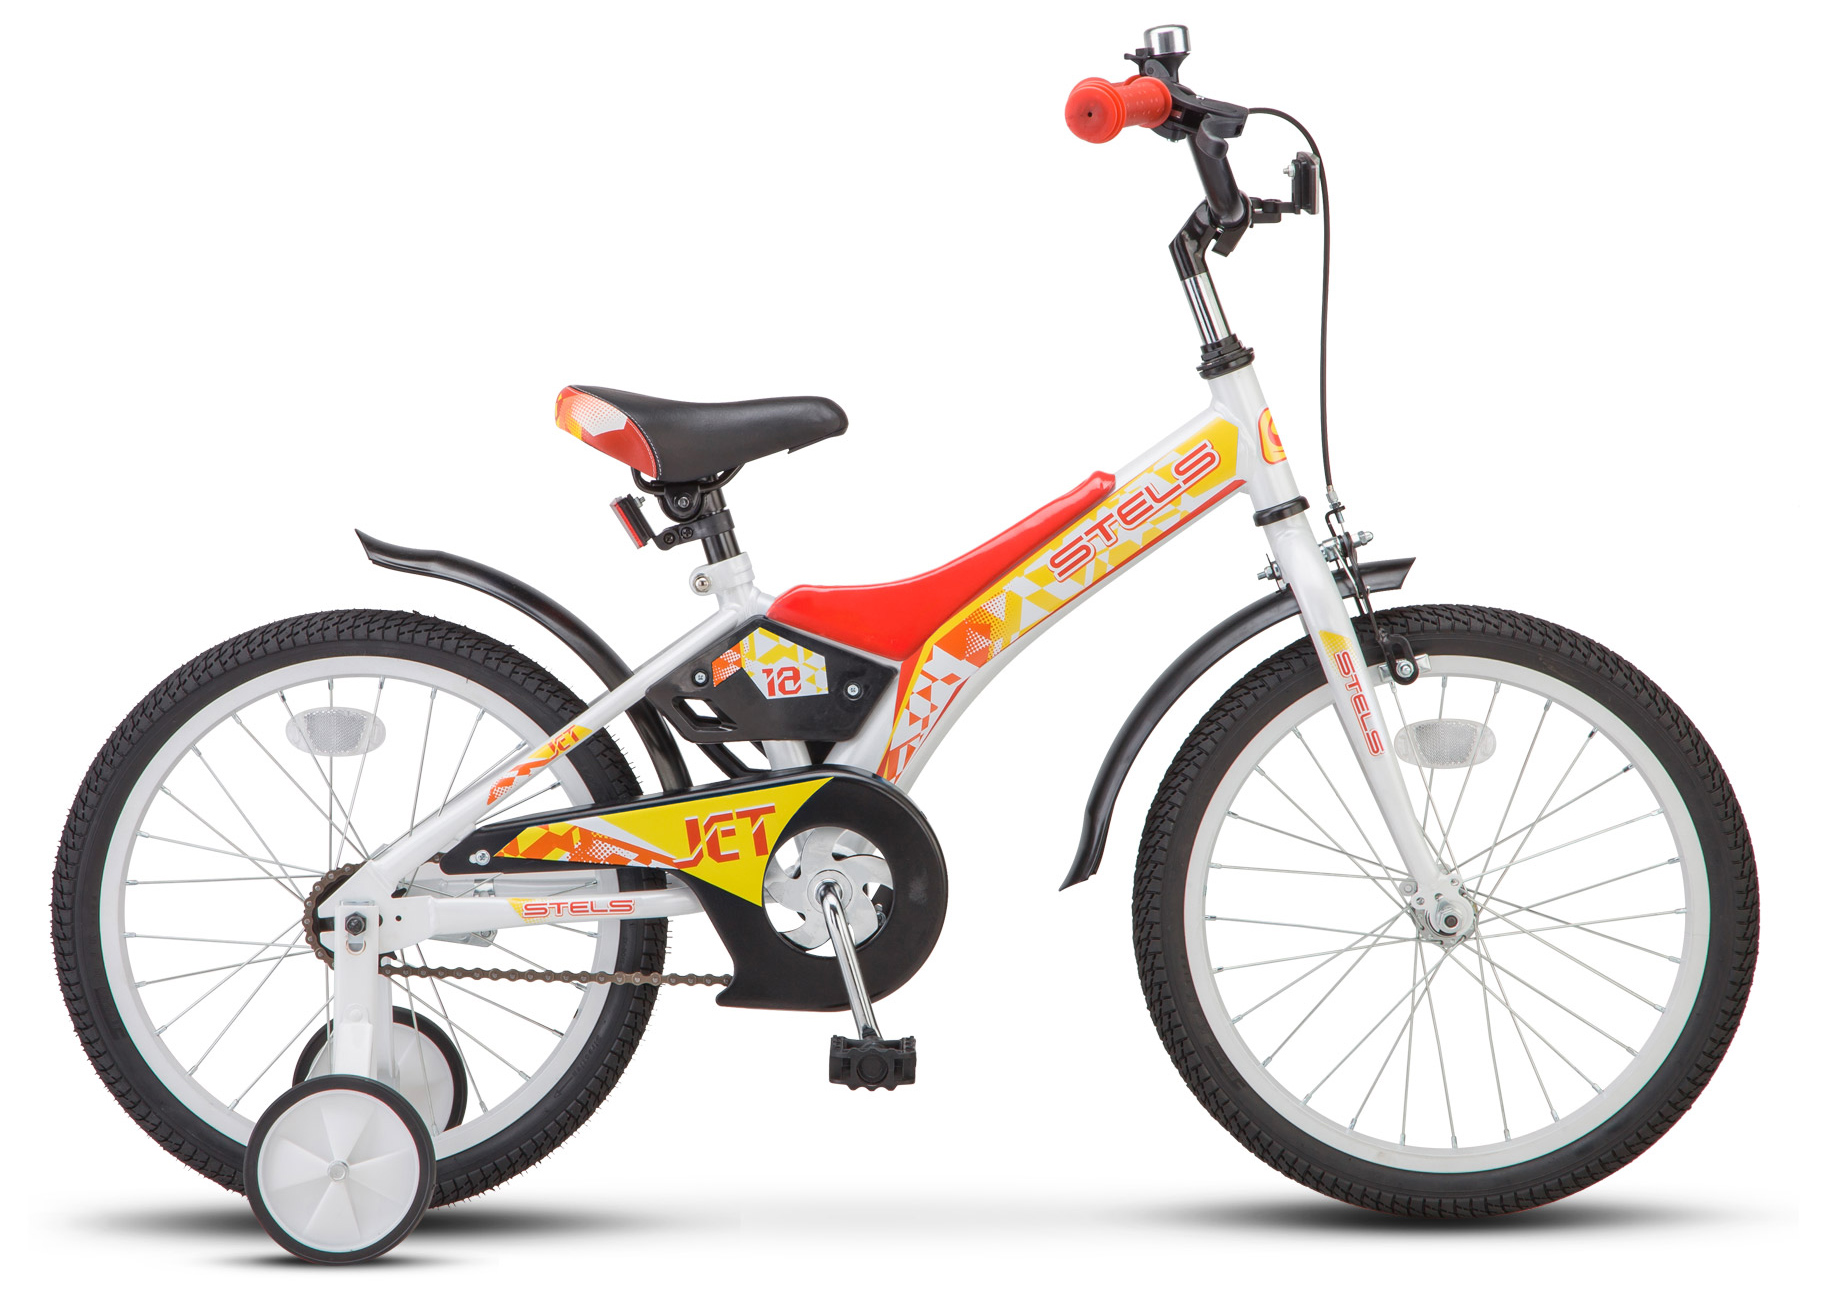  Отзывы о Детском велосипеде Stels Jet 18" (Z010) 2019